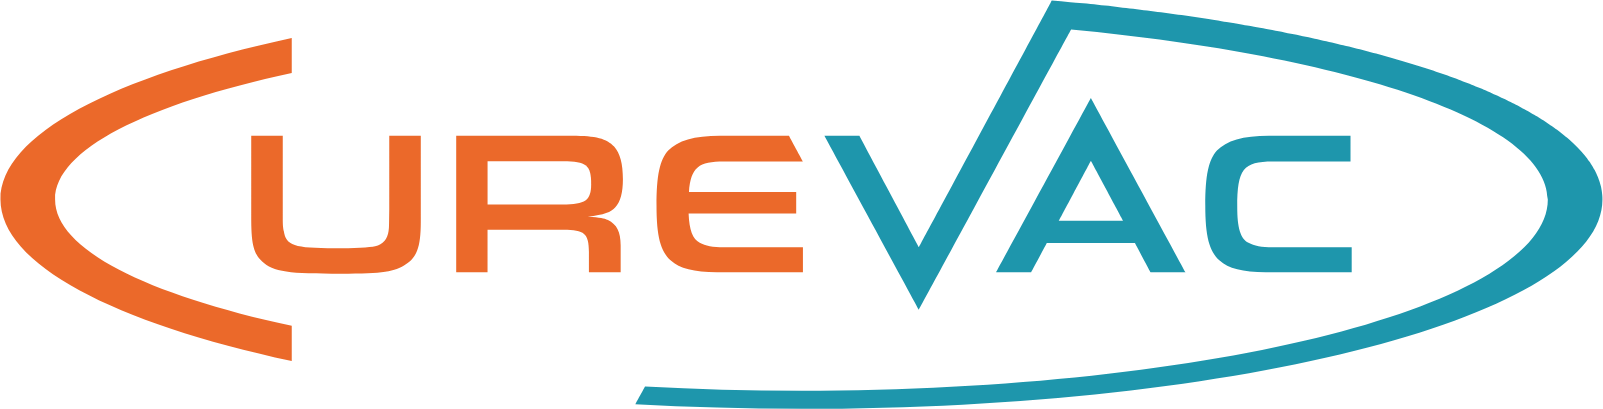 Curevac Logo (transparentes PNG)